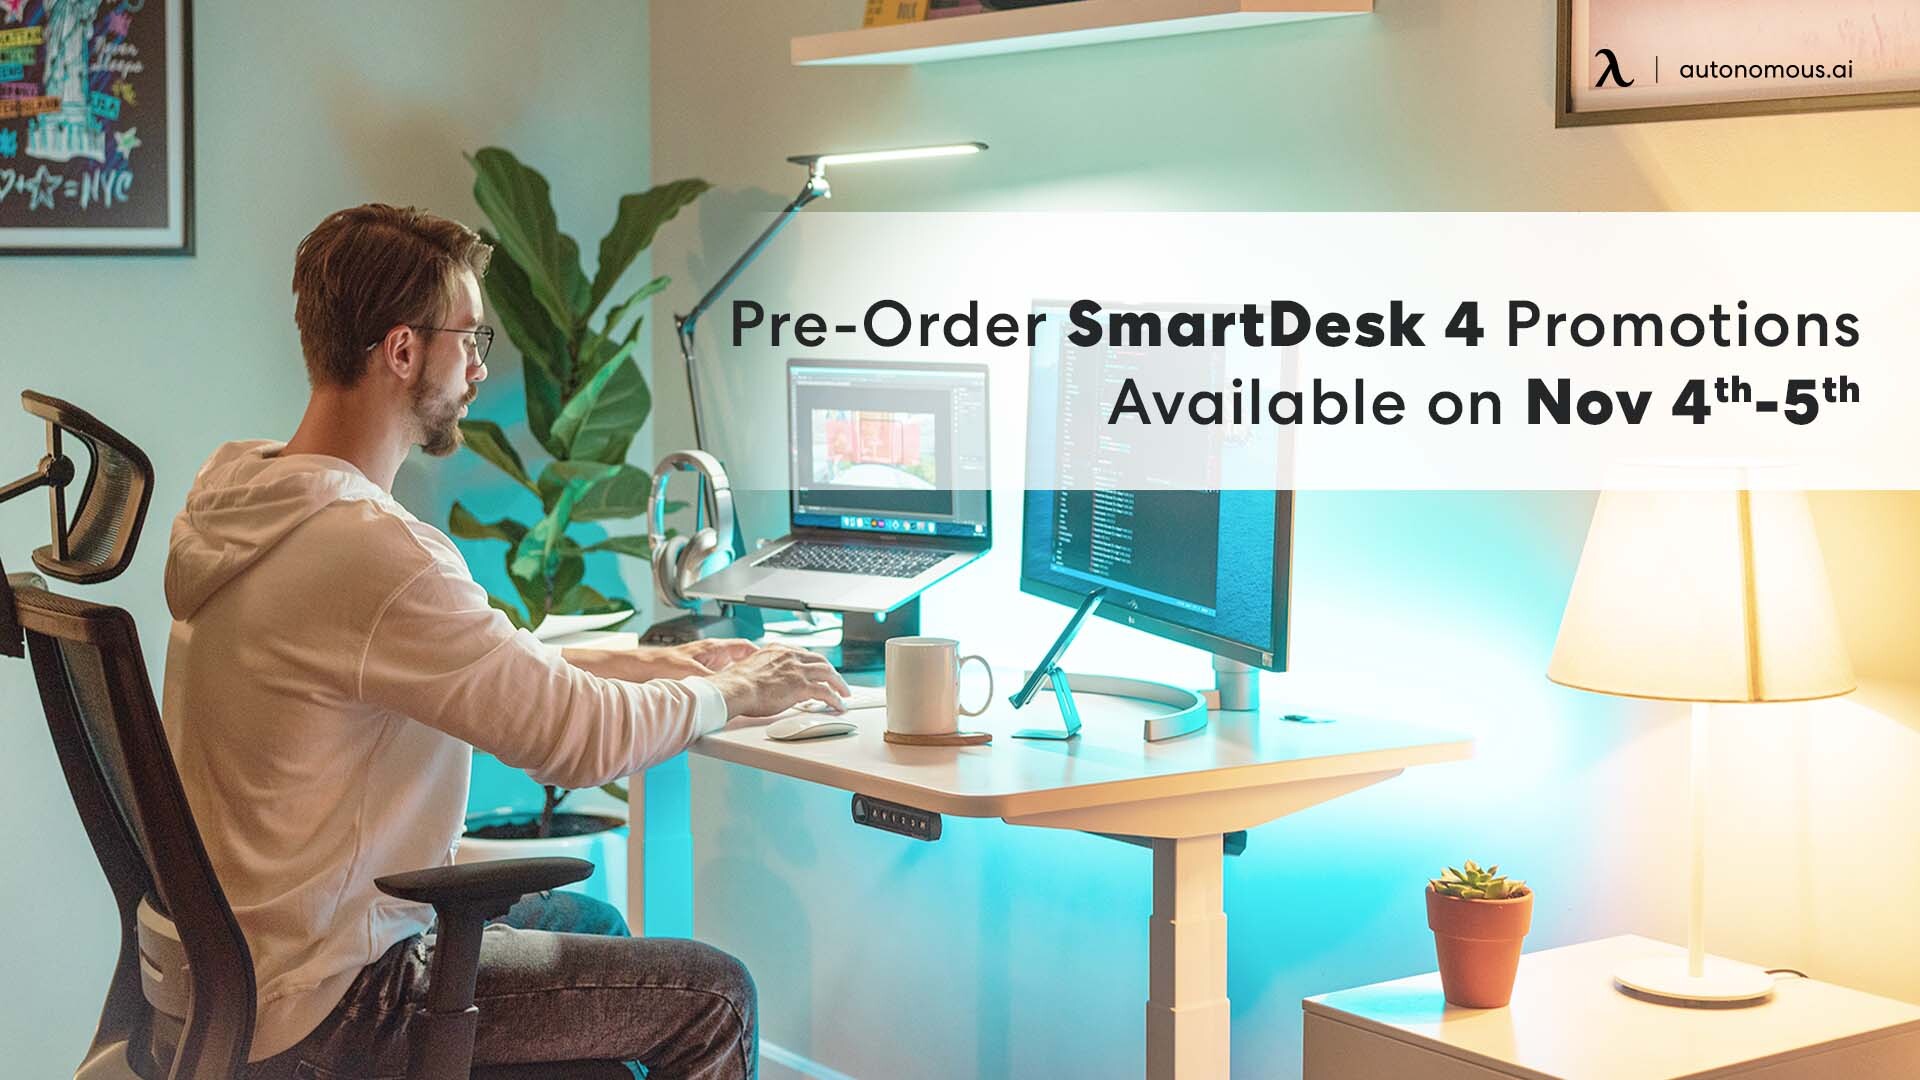 Pre-Order SmartDesk 4 Promotions